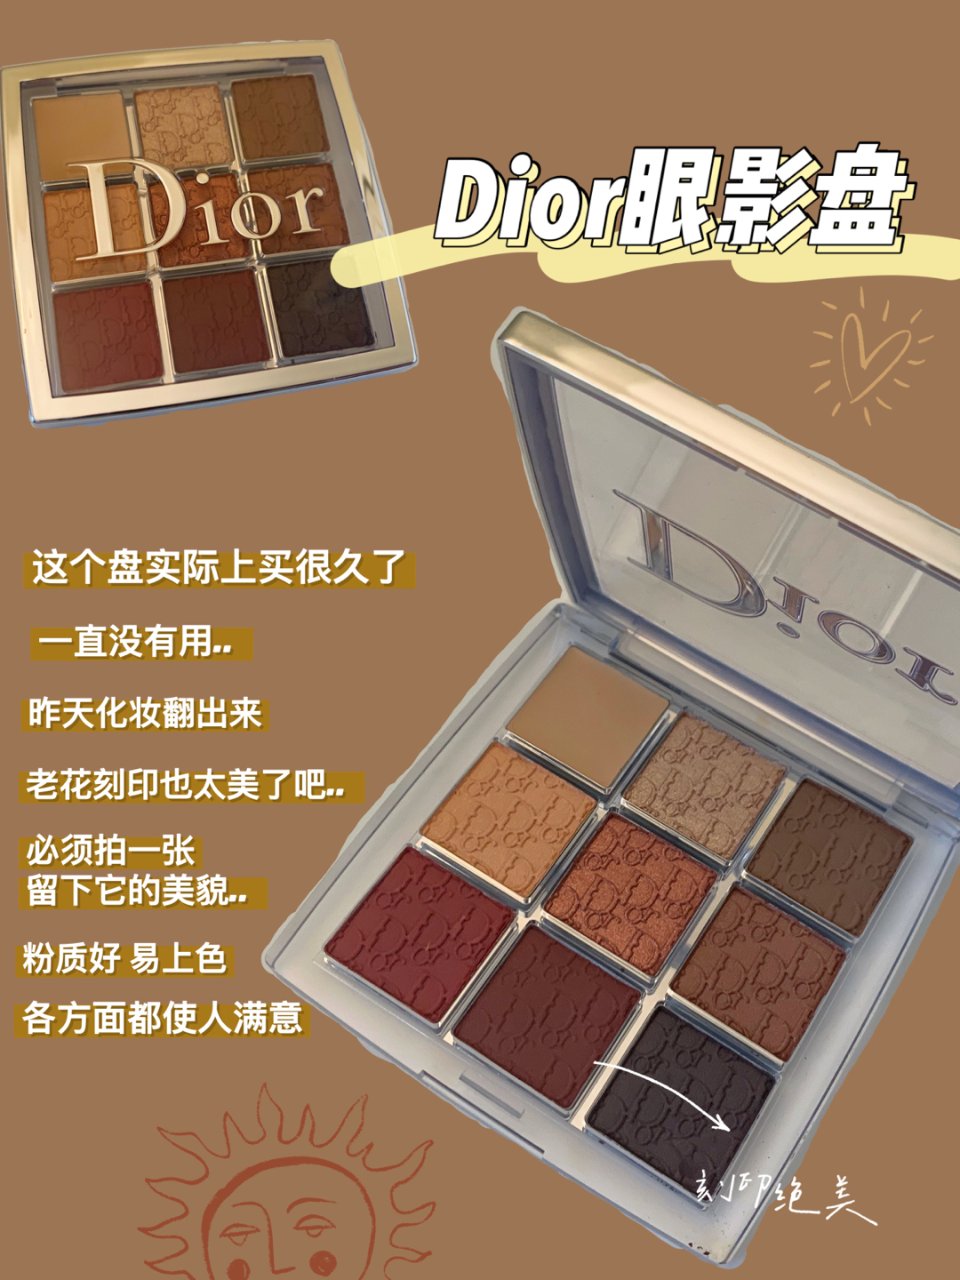 今日开箱之Dior九宫格眼影盘...